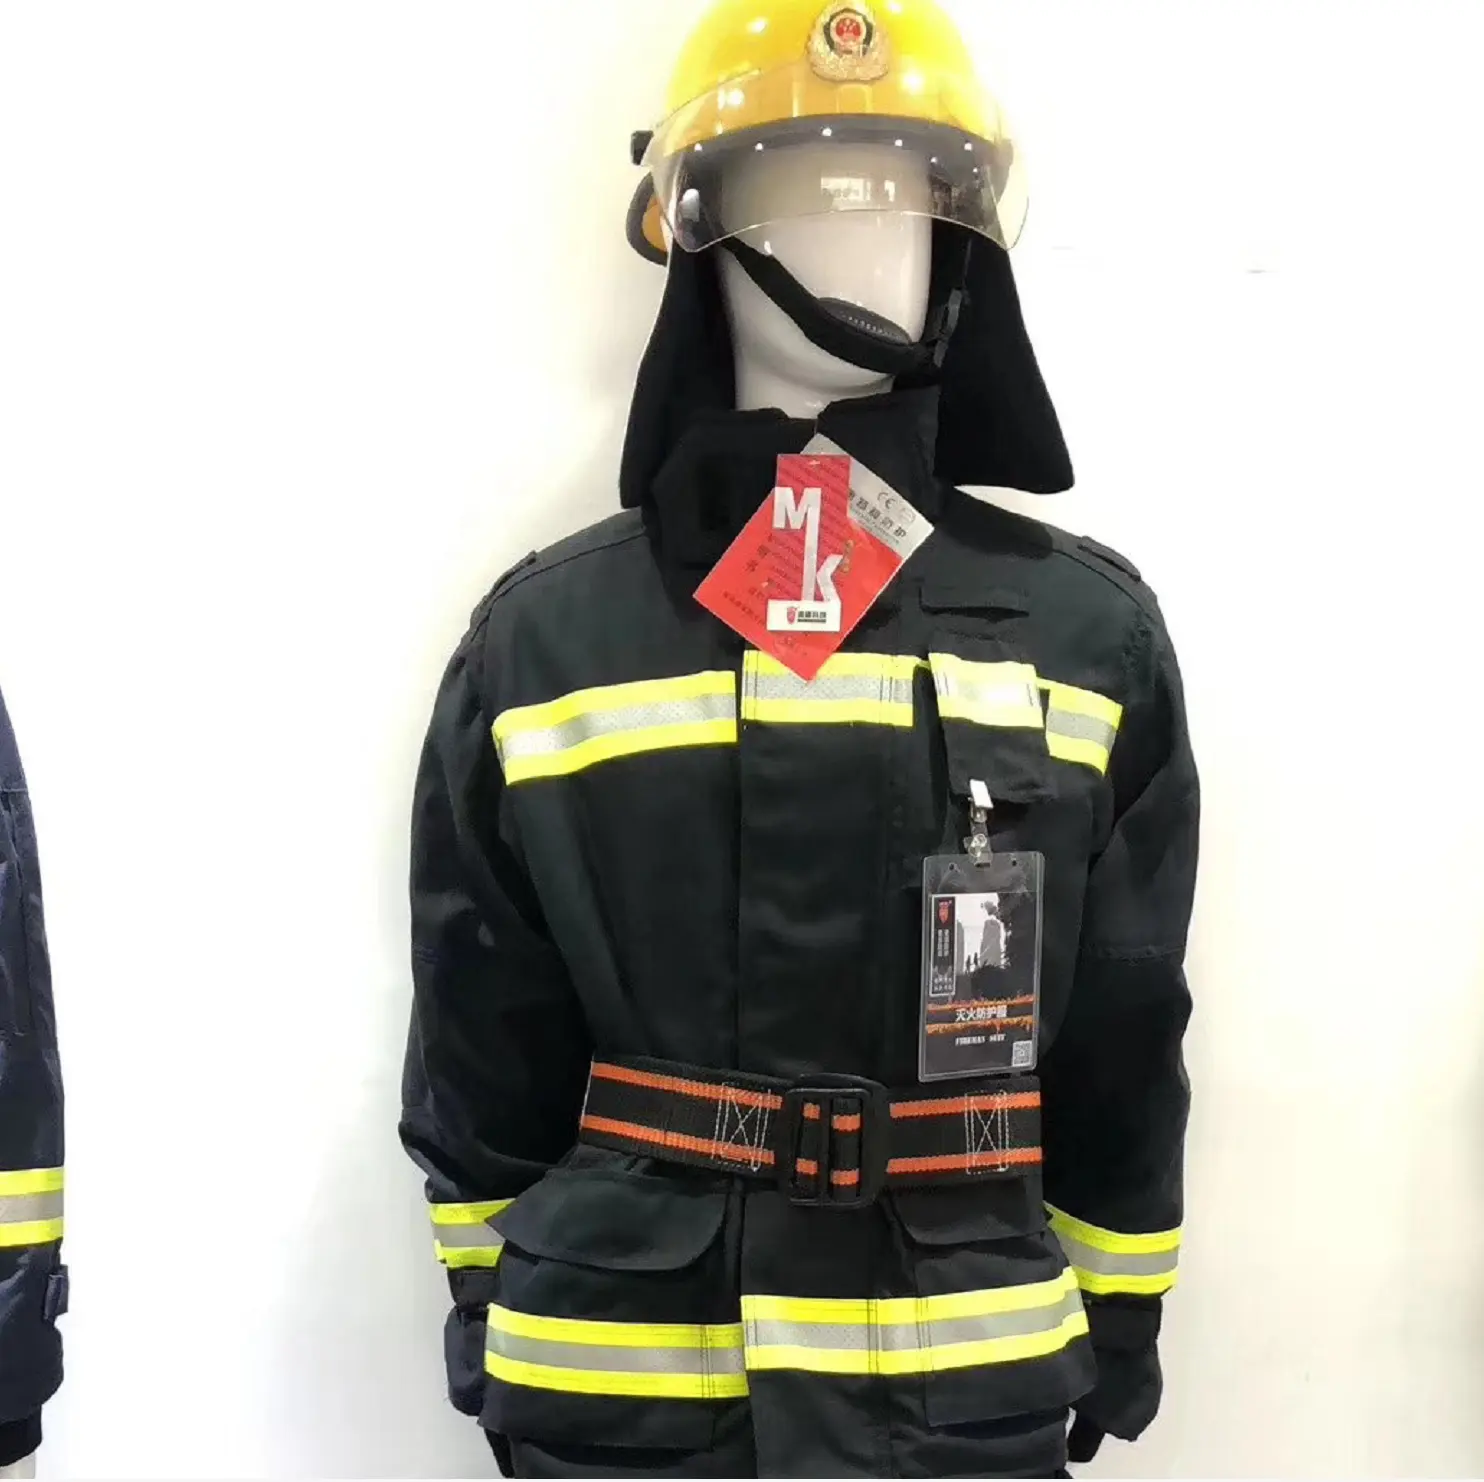 EN 469ชุดนักดับเพลิง,สีกรมท่าแบบคลาสสิกสีกรมท่าลายทแยง4ชั้นชุดดับเพลิง